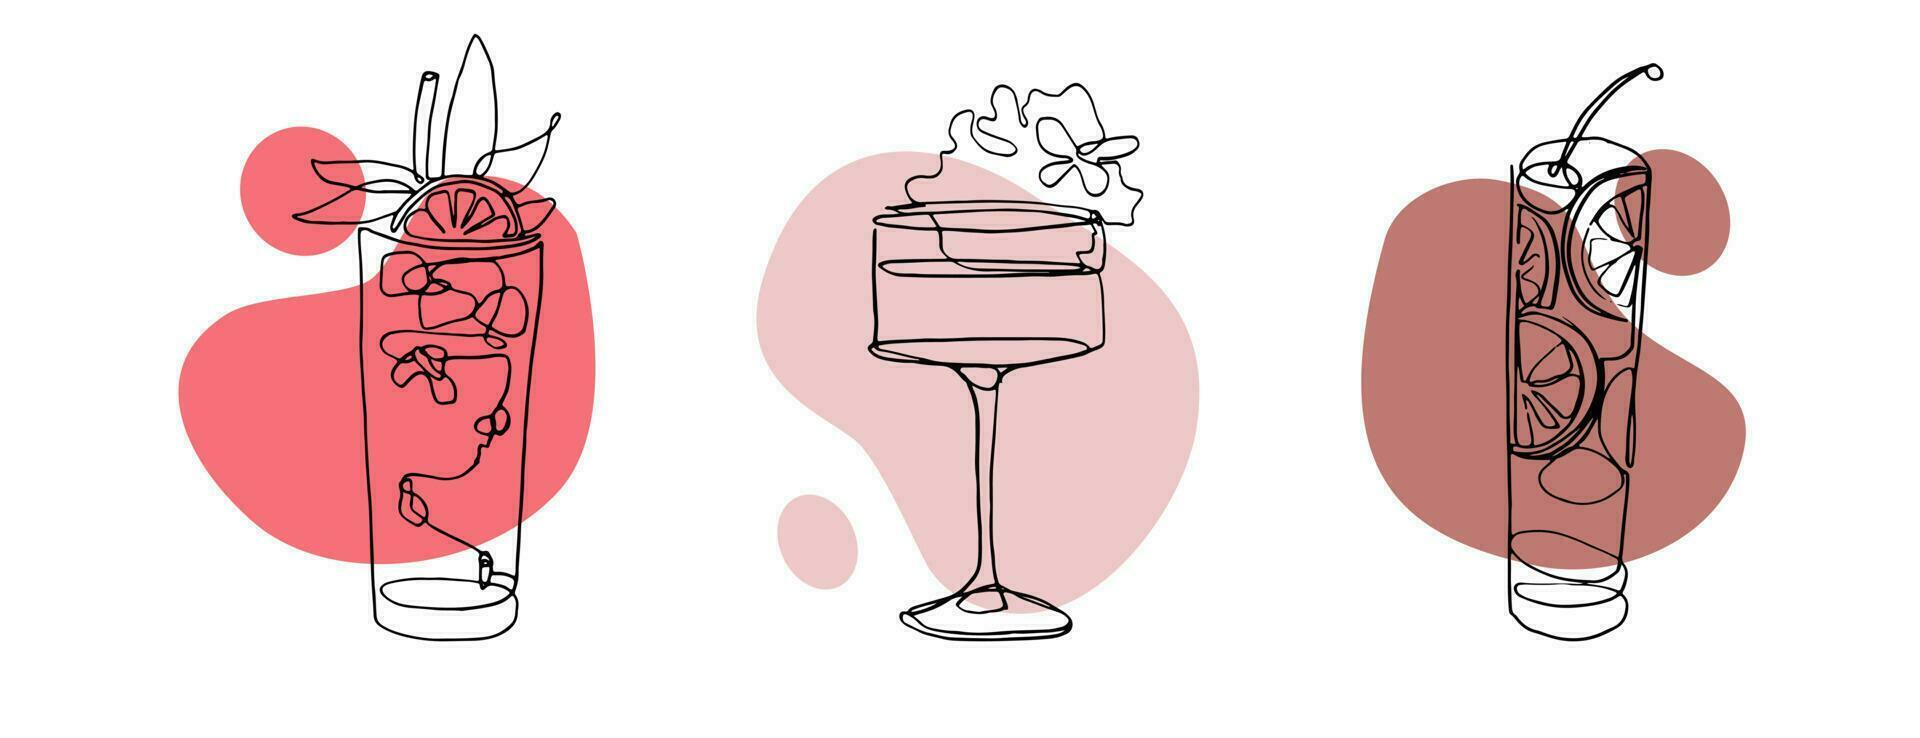 kontinuierlich Linie Zeichnung von exotisch Cocktail Getränke. Vektor